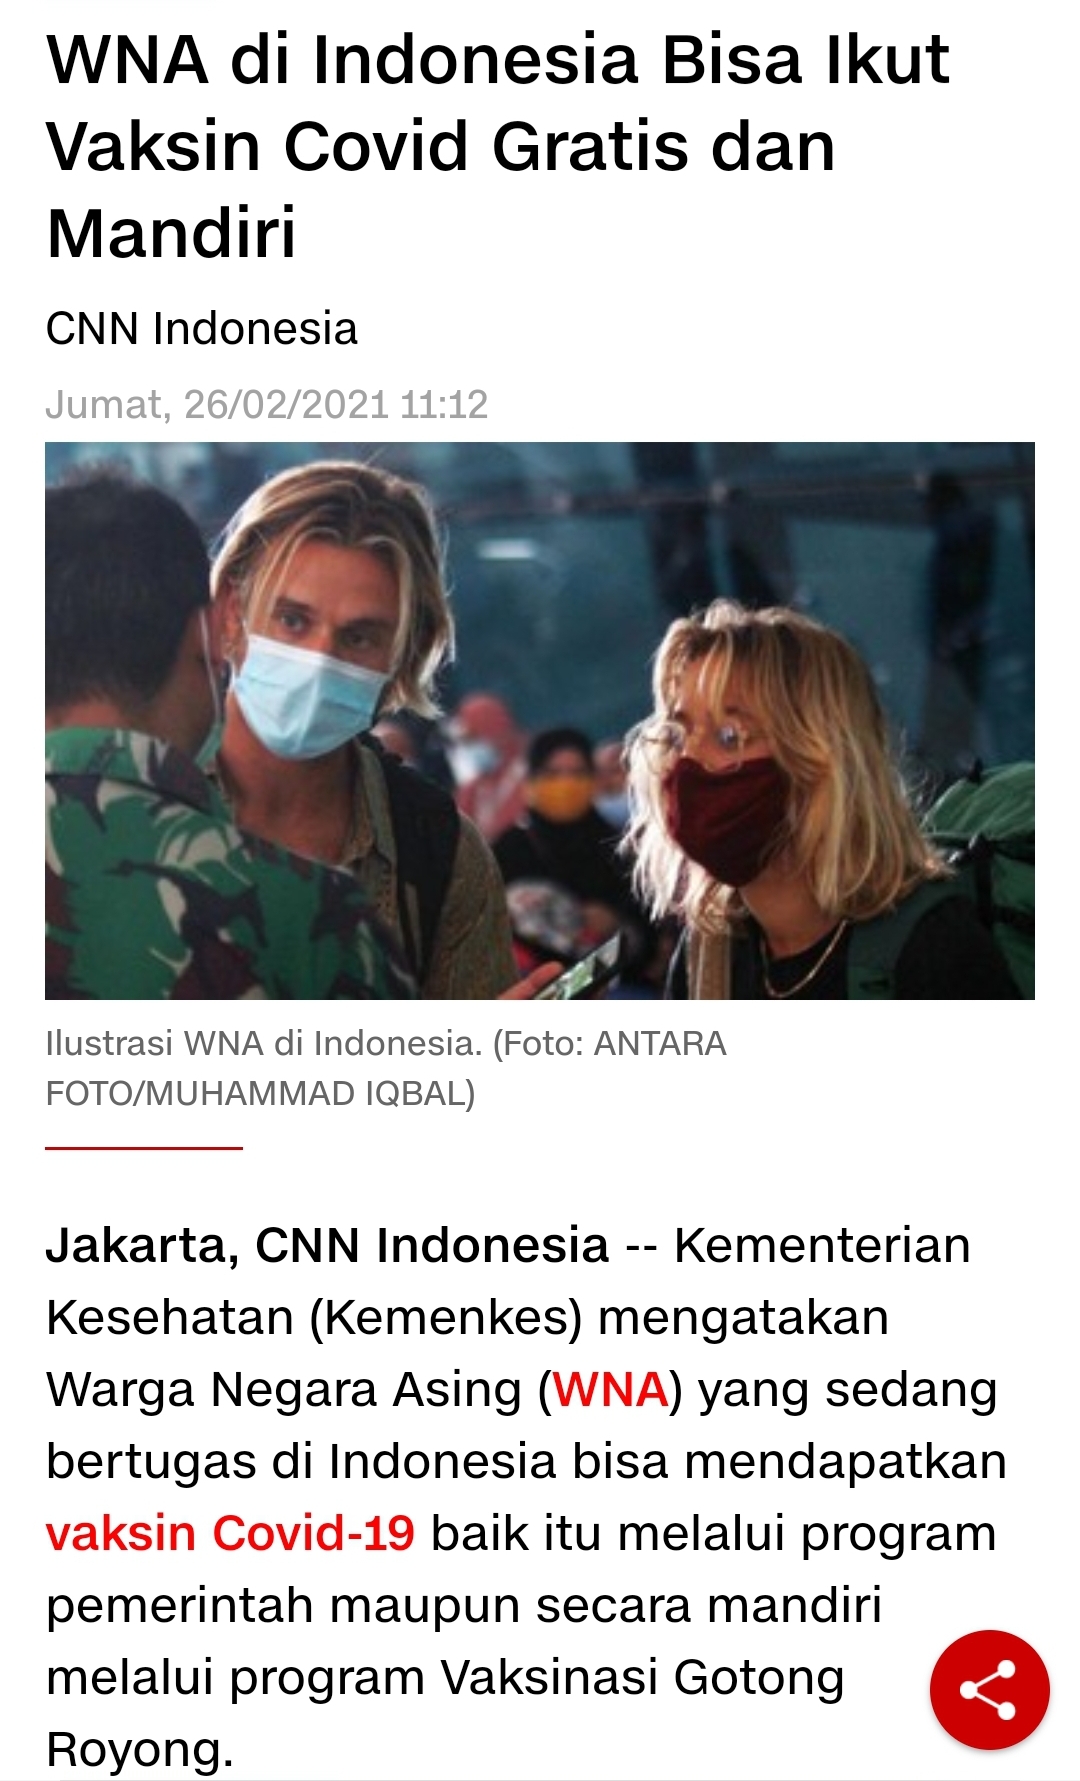 인도네시아 보건부(Kemenkes)는 인도네시아에서 근무 중인 외국인도 정부 백신 접종 프로그램에 따라 상부상조(Gotong royong) 백신을 맞을 수 있다고 CNN INDONESIA는 보도했다.